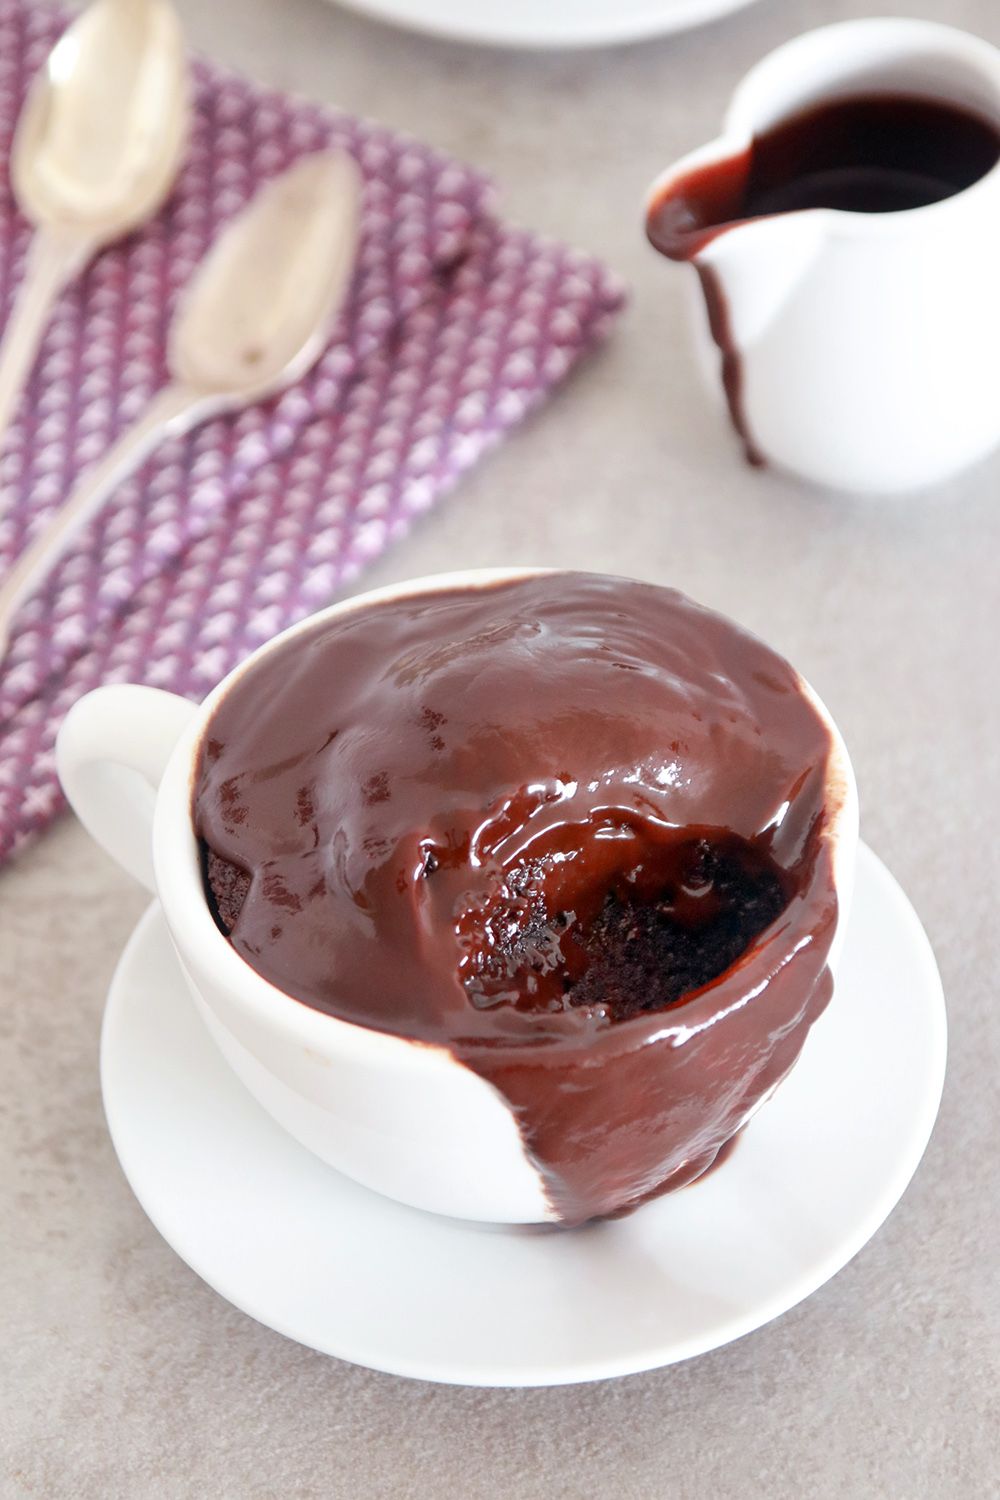 עוגת שוקולד חמה בספל עם רוטב שוקולד חם | צילום: נטלי לוין